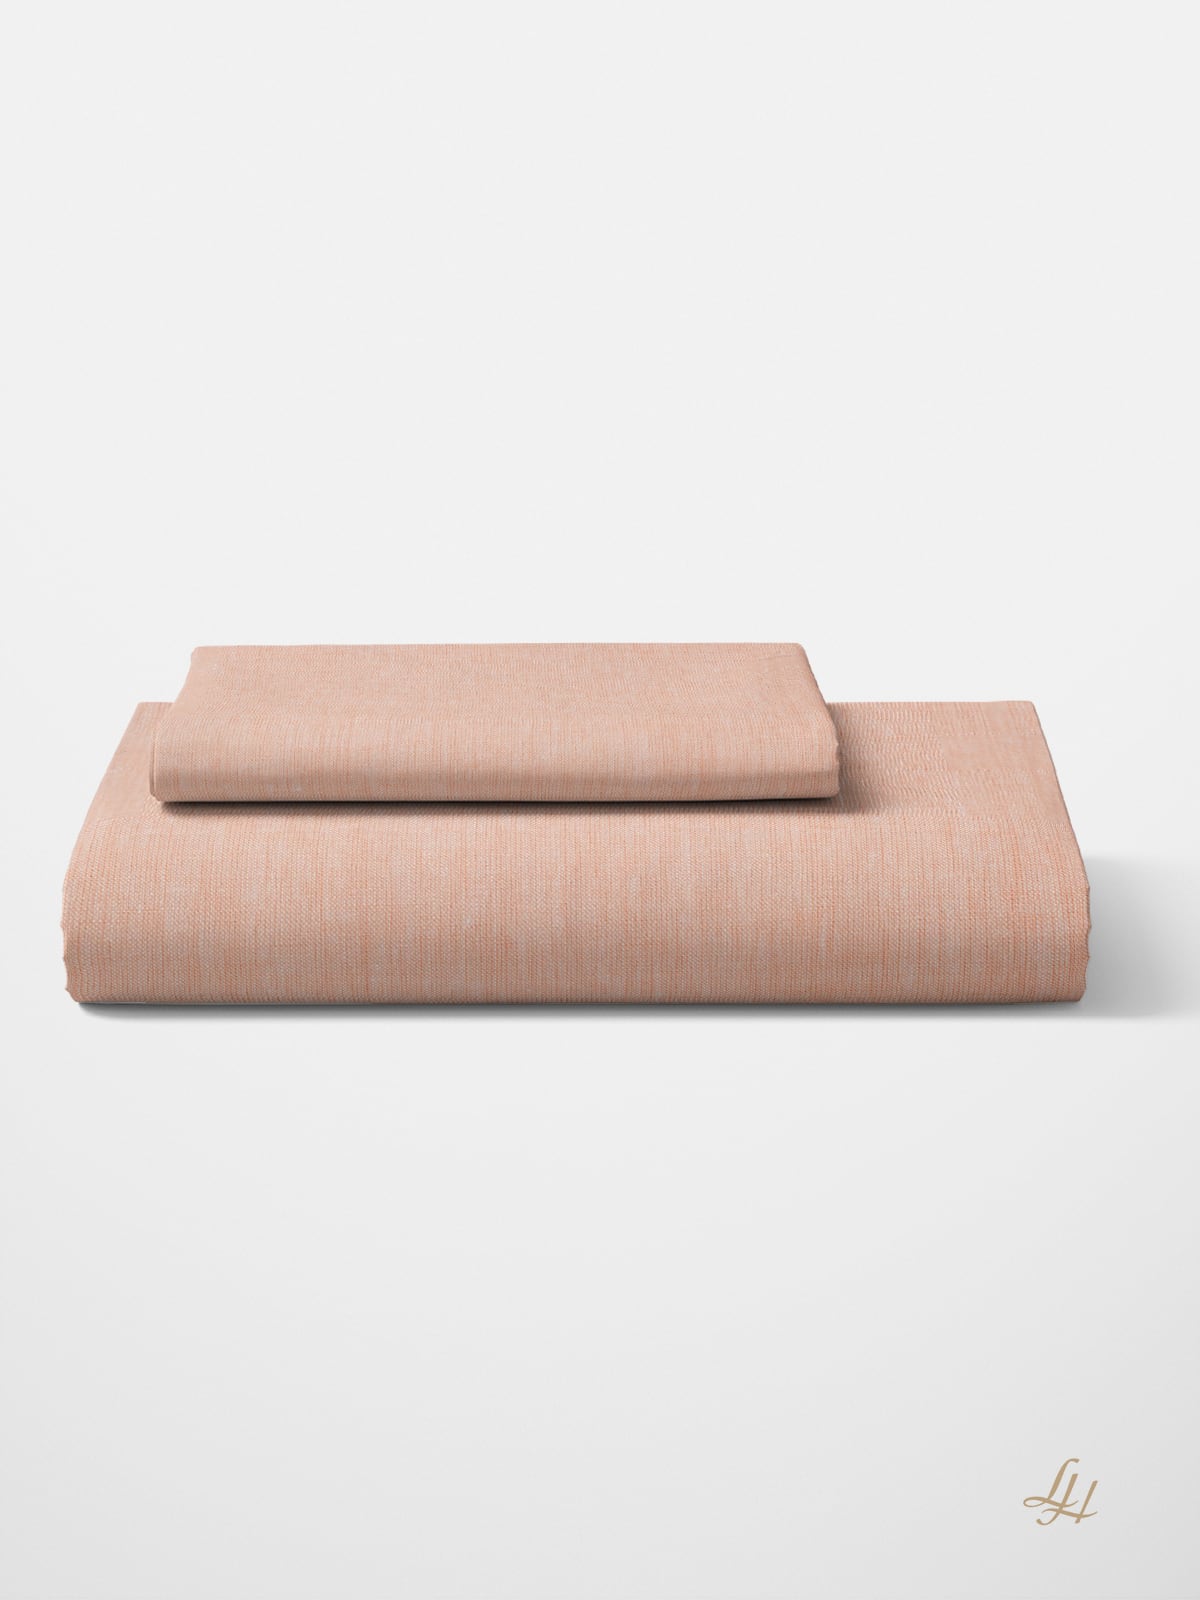 Bettbezug in Reinleinen-mittelgrob in Uni-Farbe Lachs gefaltet